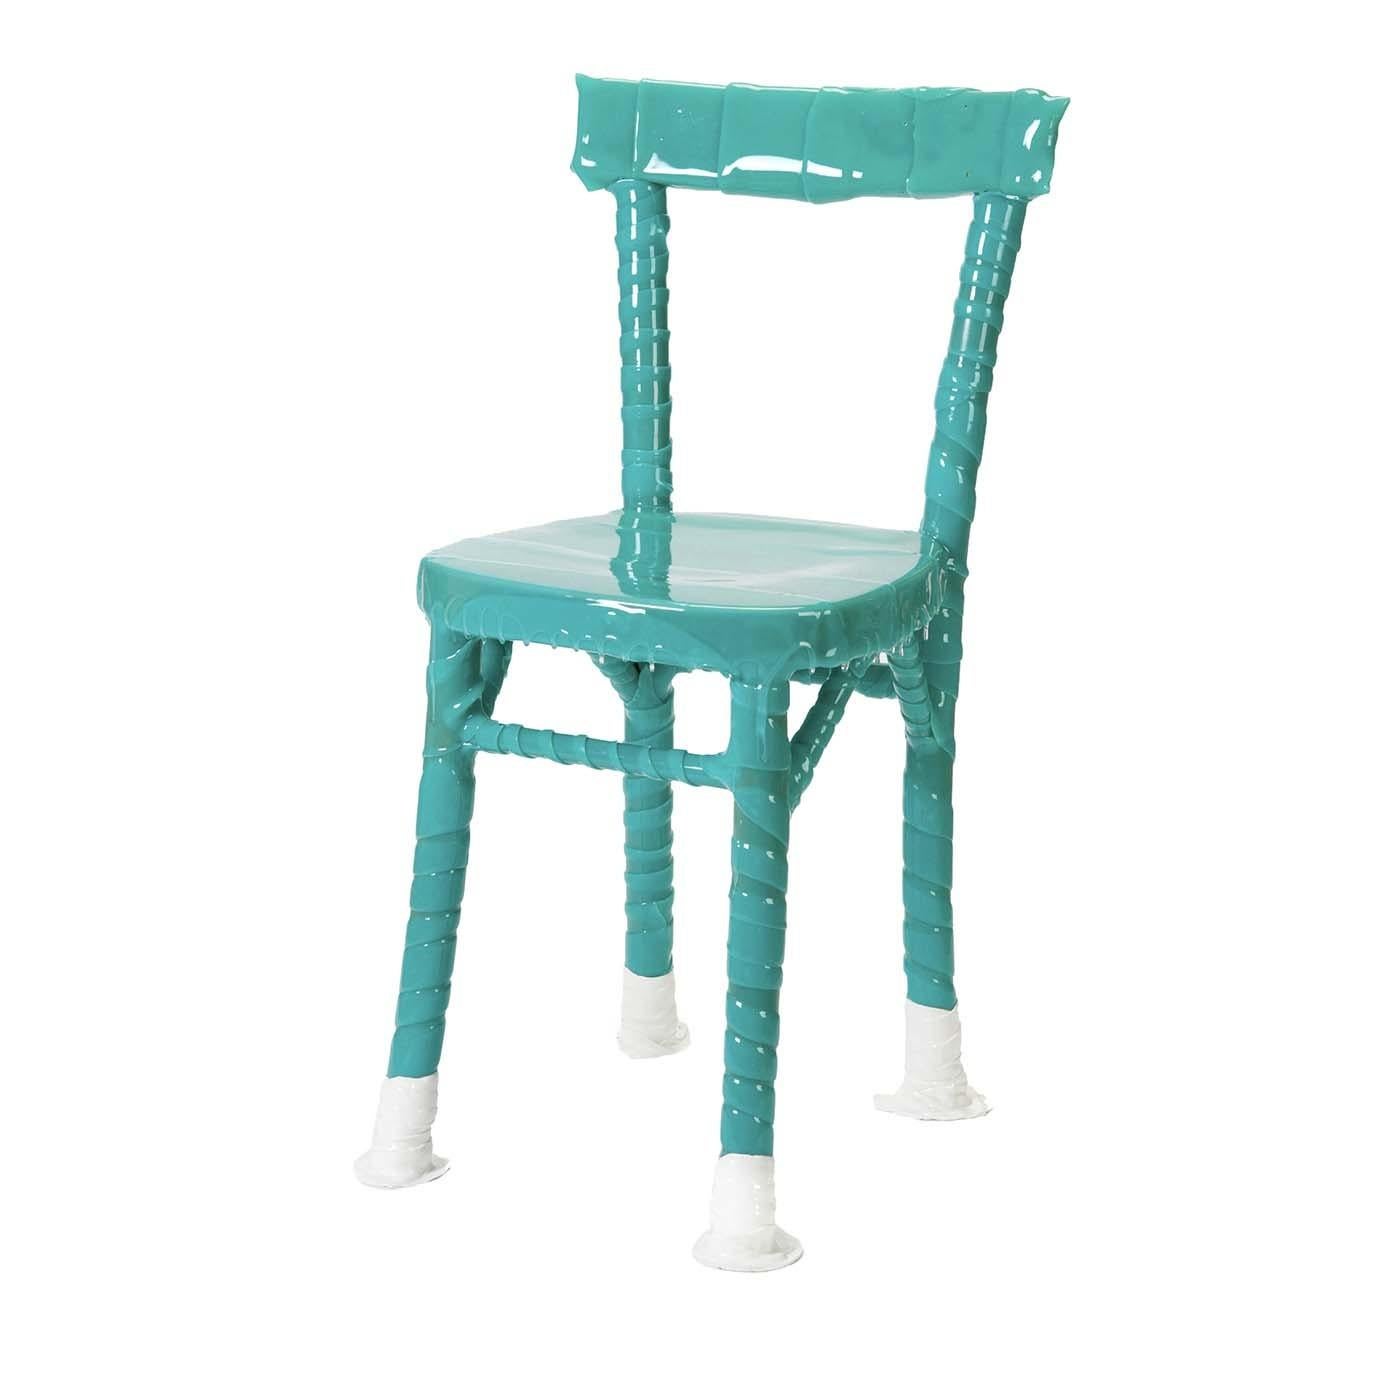 La collection One-Off fait partie du projet upcycling : des chaises oubliées, ignorées ou gisant quelque part, sont redécouvertes après avoir été enveloppées dans des bandages en résine par des artisans experts. Chaque chaise est très spéciale, avec